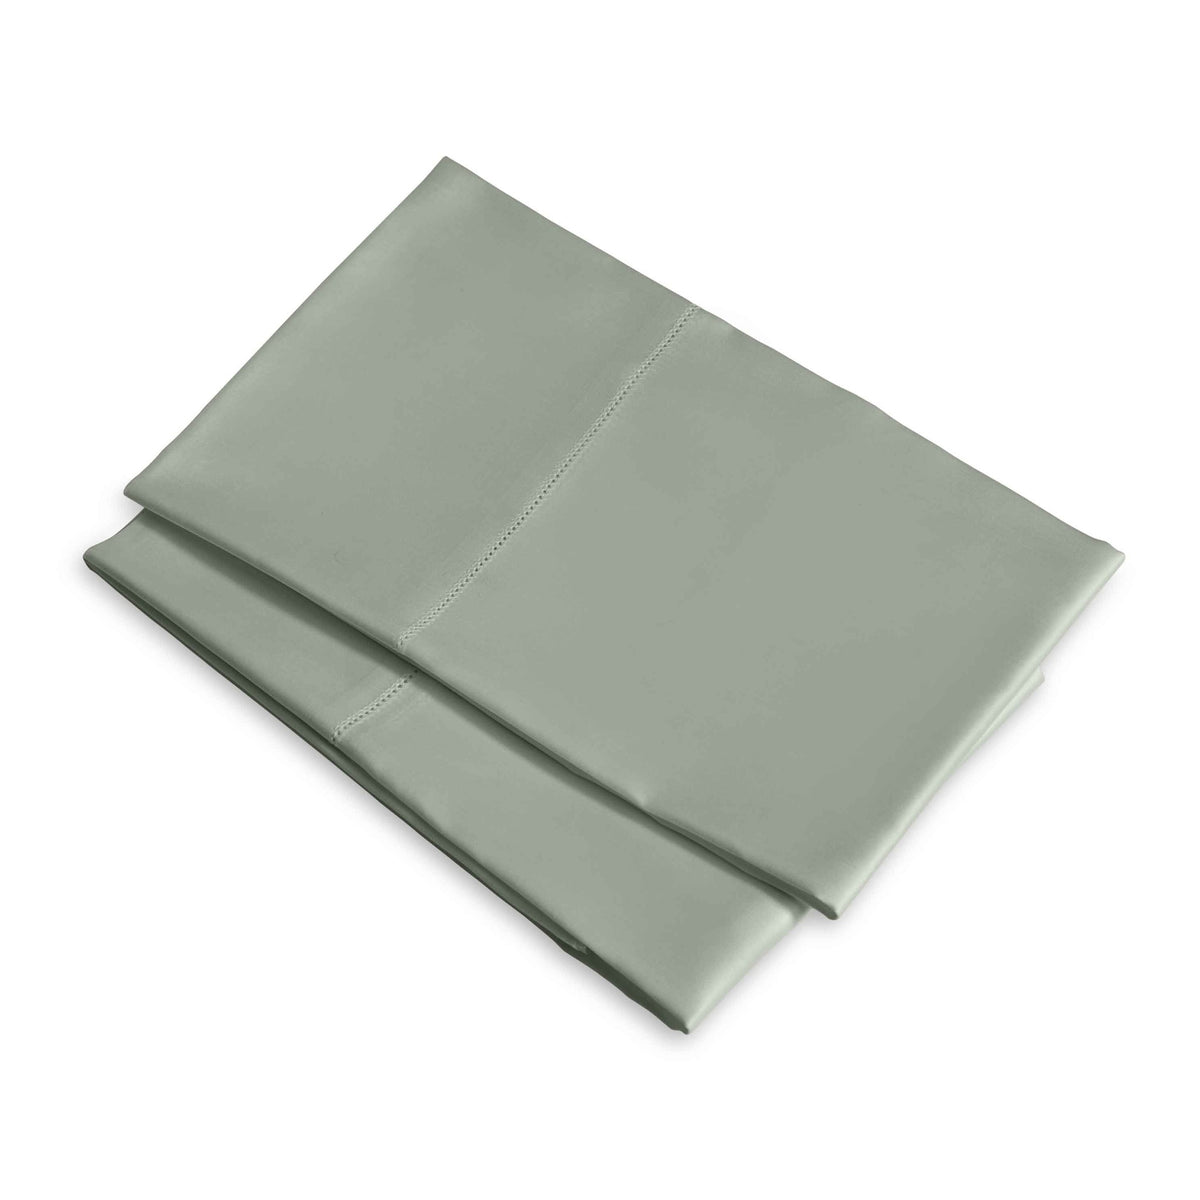 Clear Image of Signoria Raffaello Pillowcases in Silver Sage Color